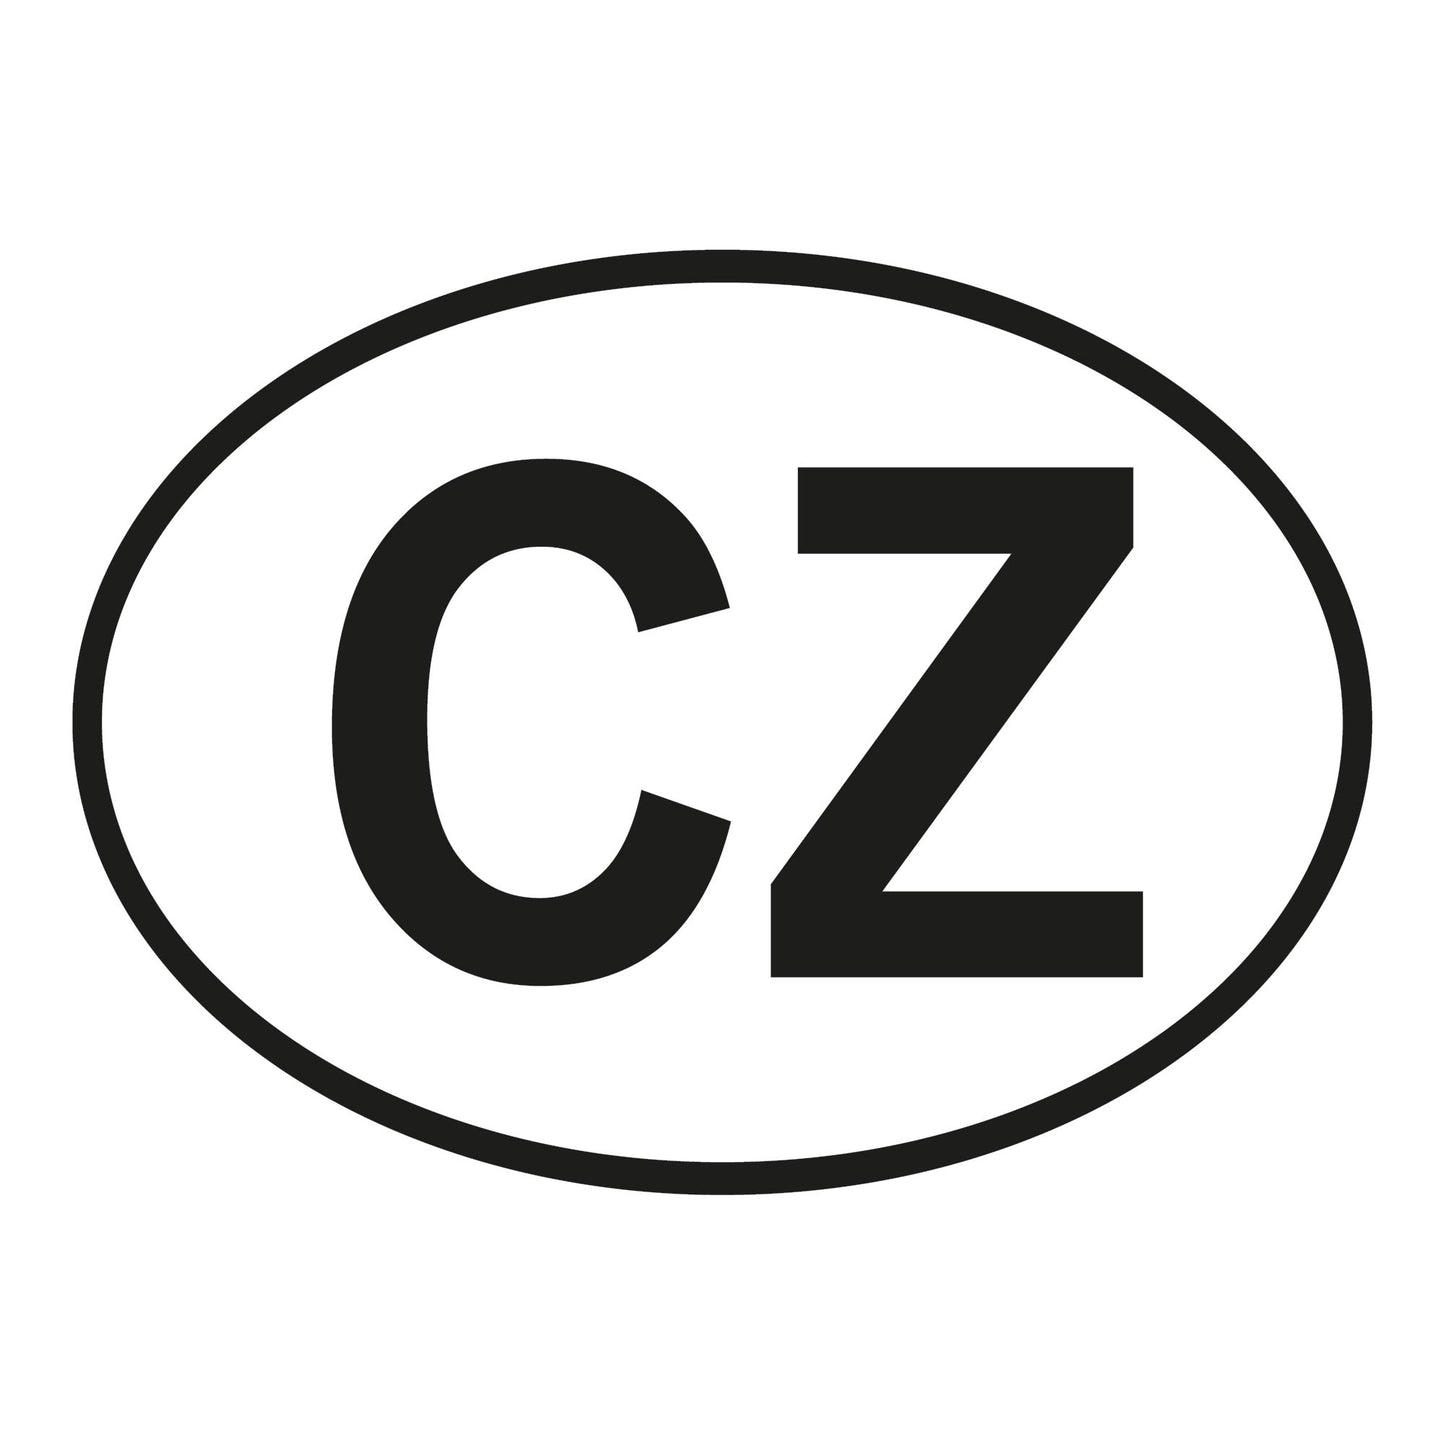 Autoaufkleber - Tschechien CZ - 110x80 mm